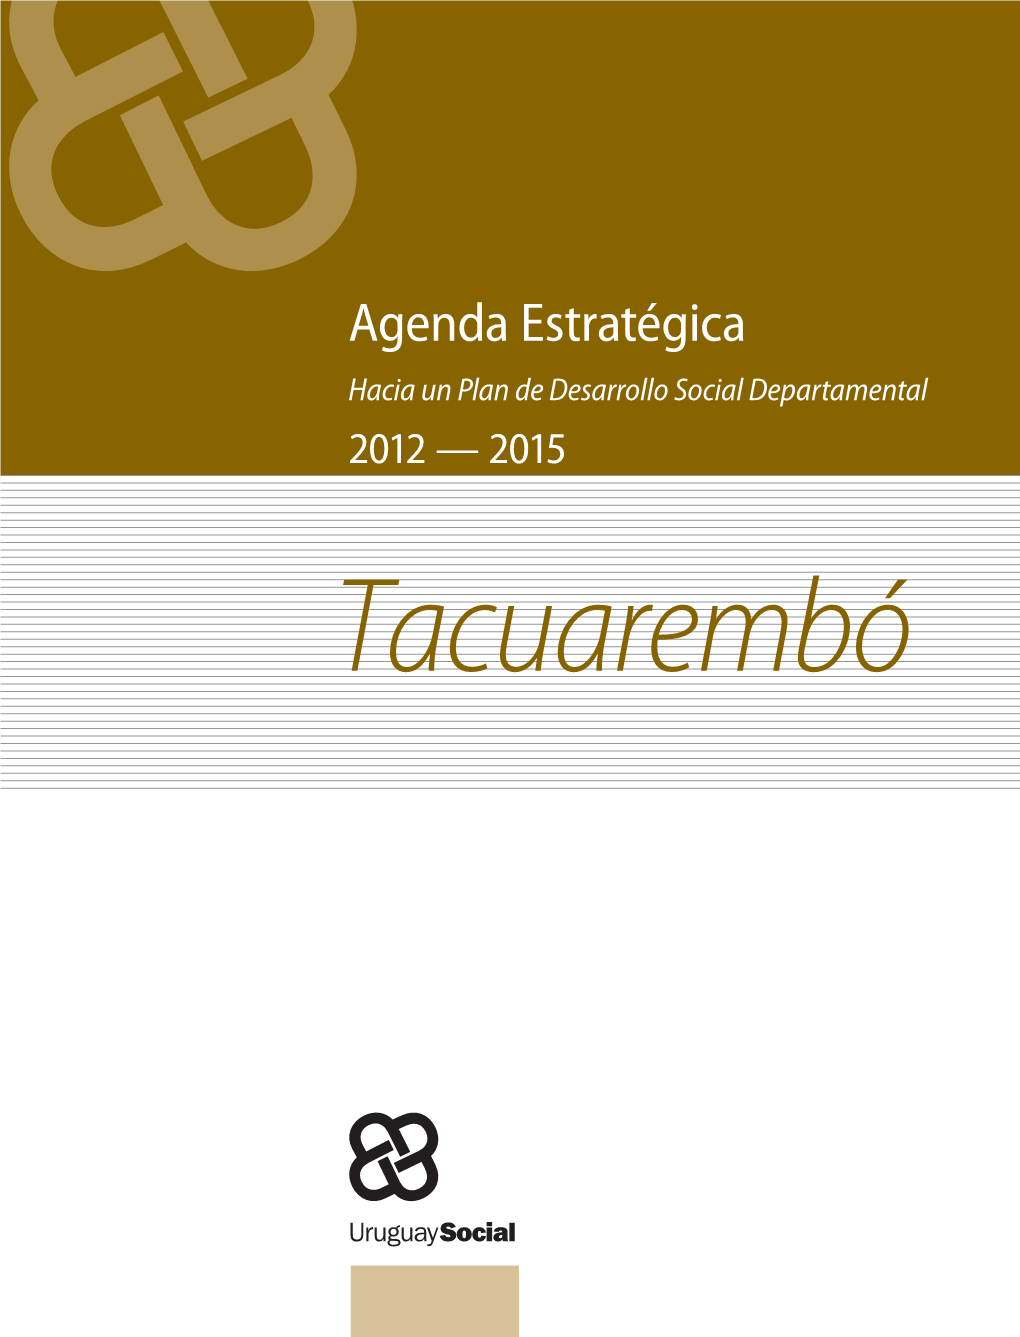 Agenda Estratégica-Tacuarembó. Hacia Un